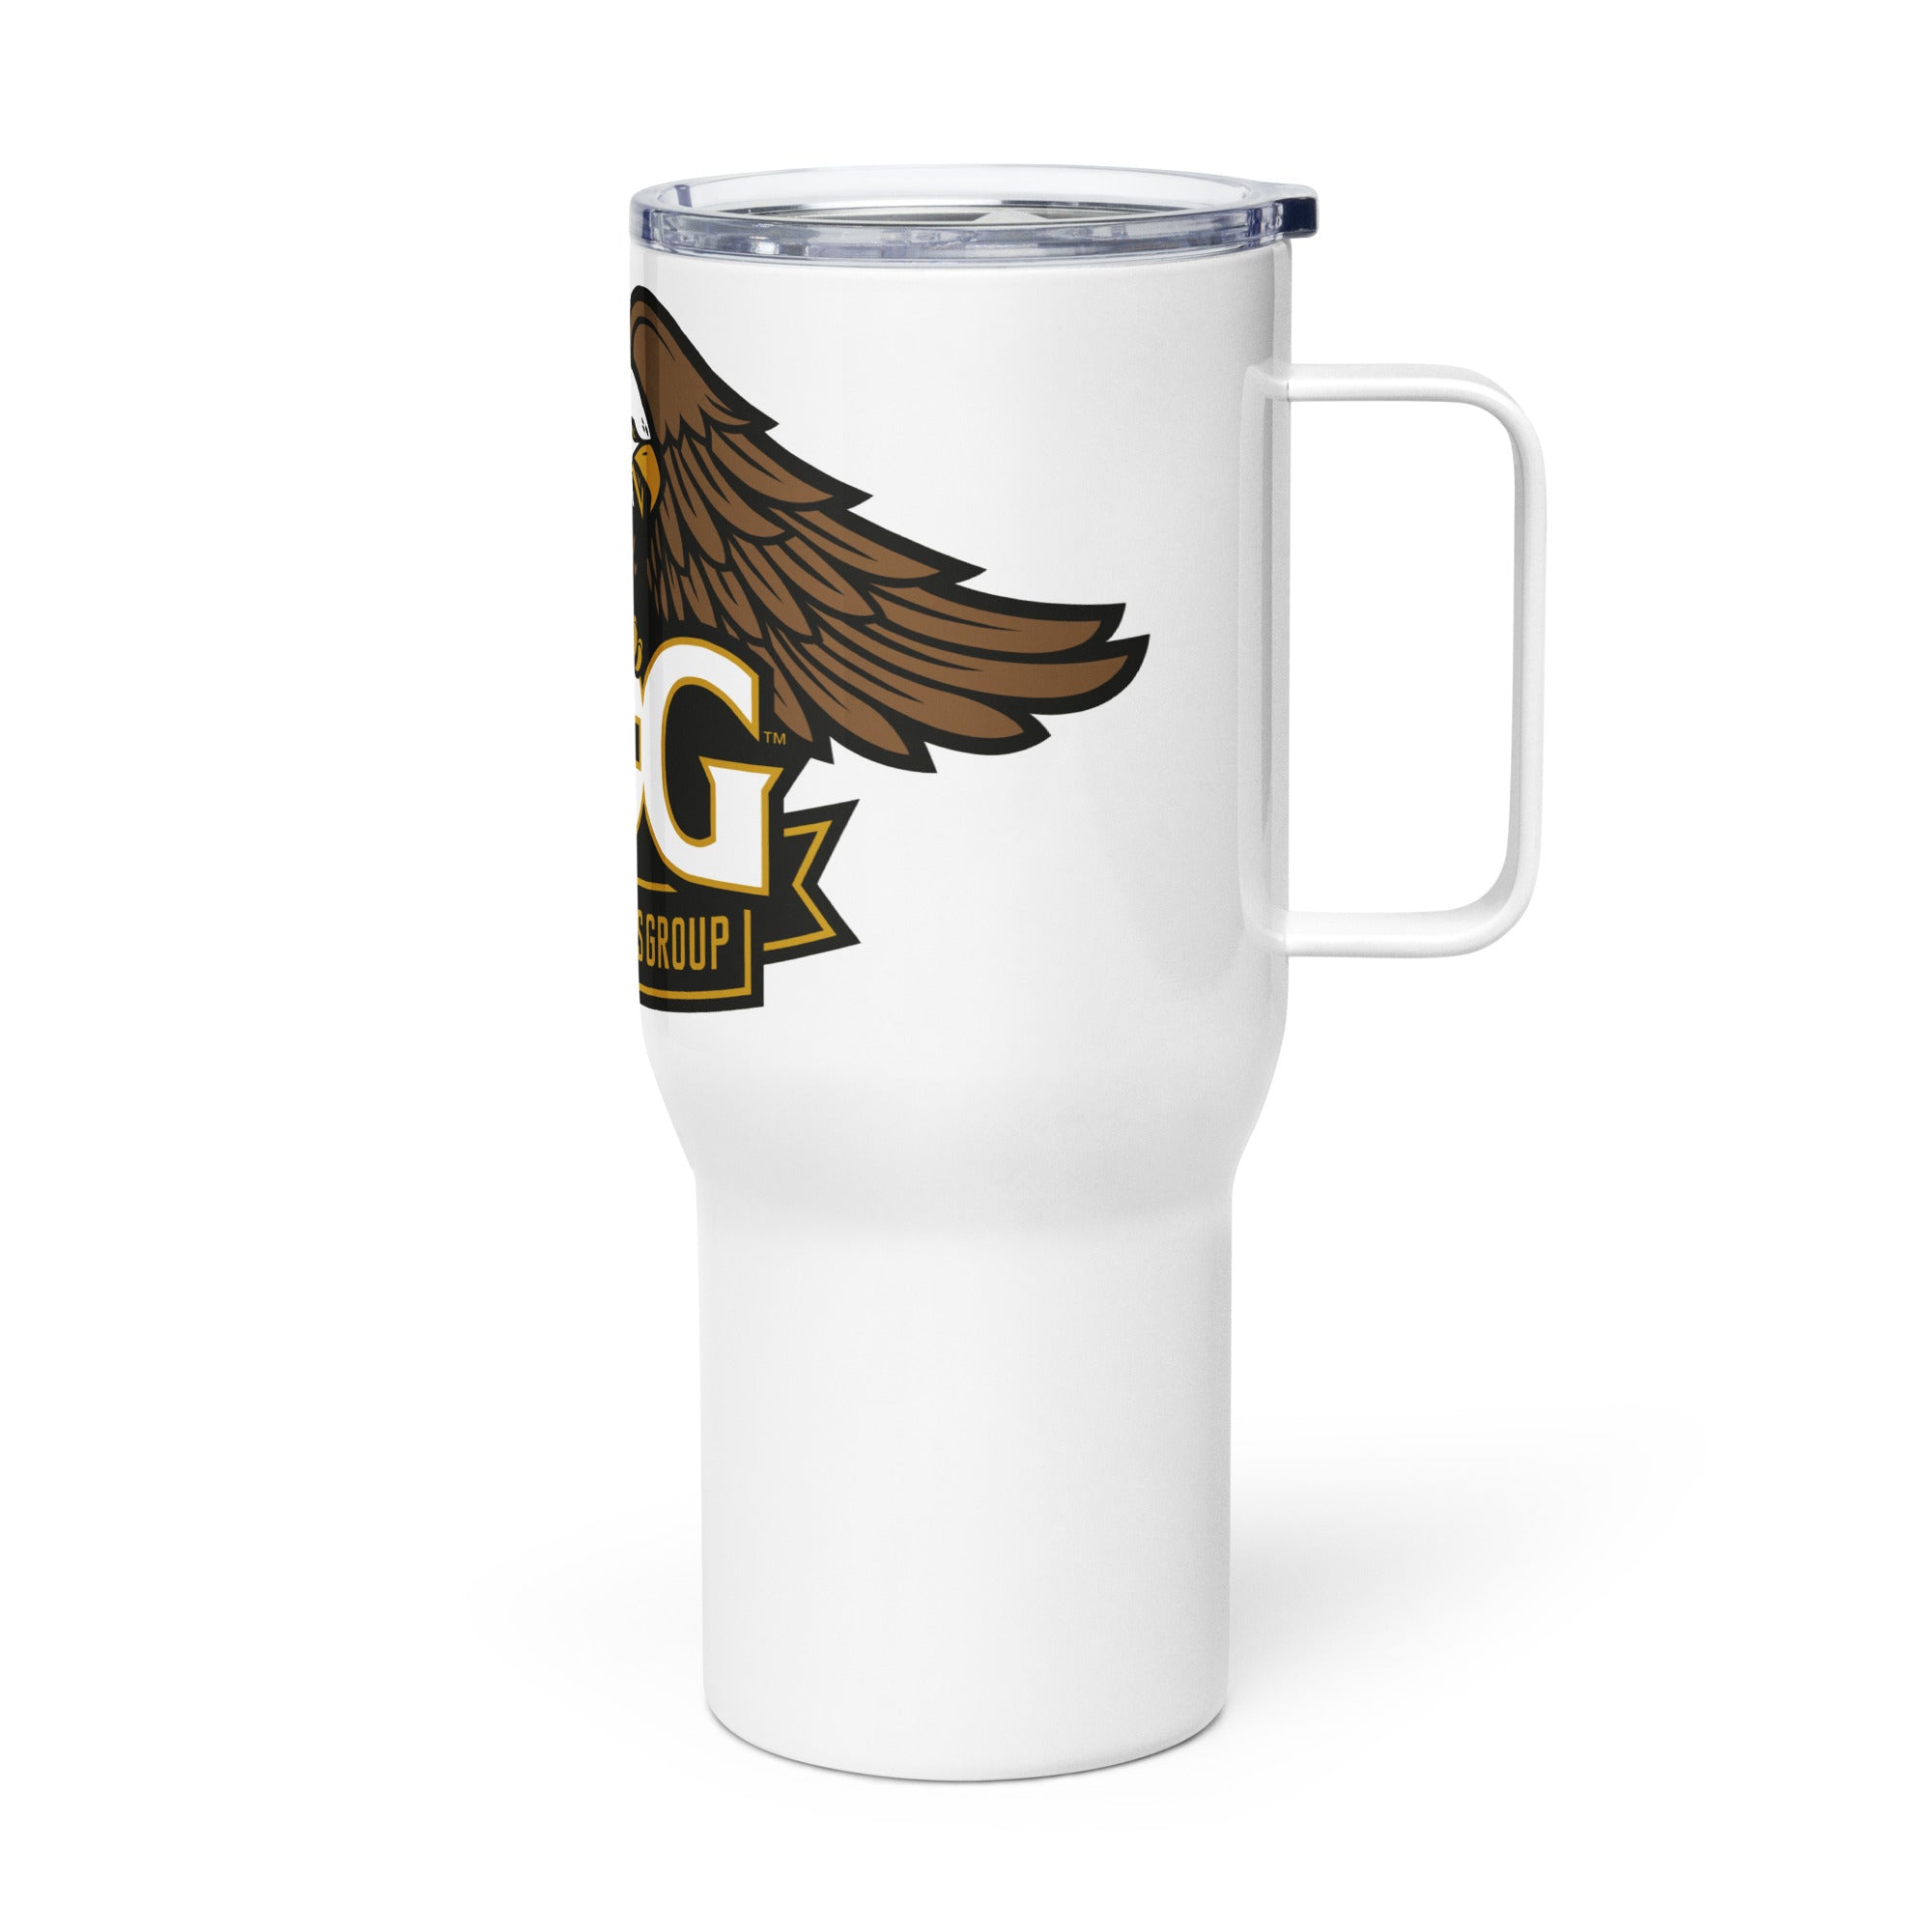 H.O.G. Travel mug with a handle